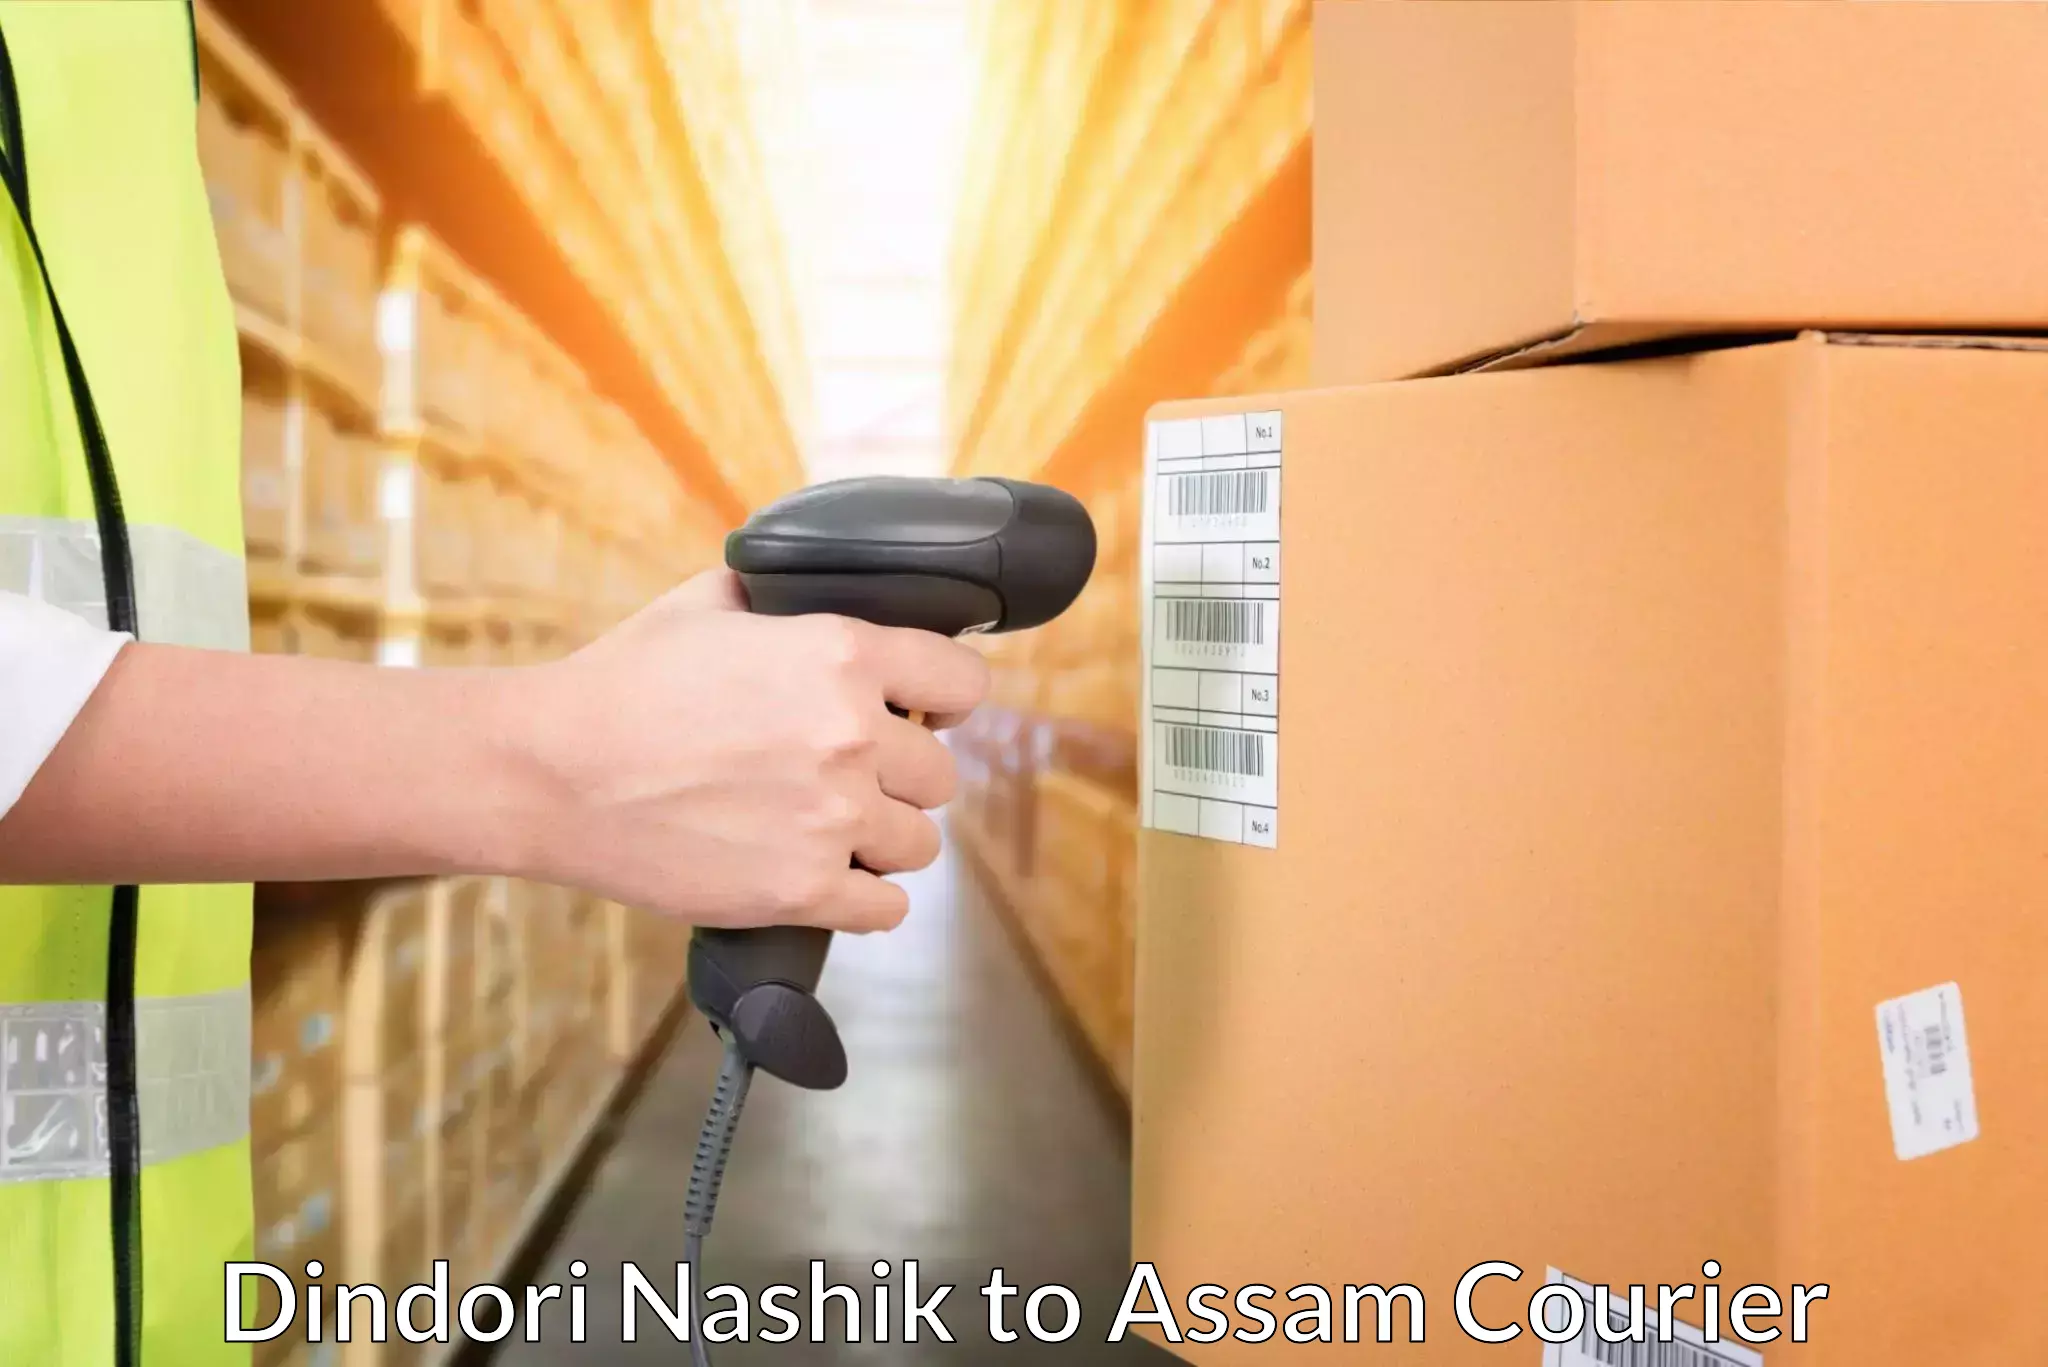 Express postal services Dindori Nashik to Assam